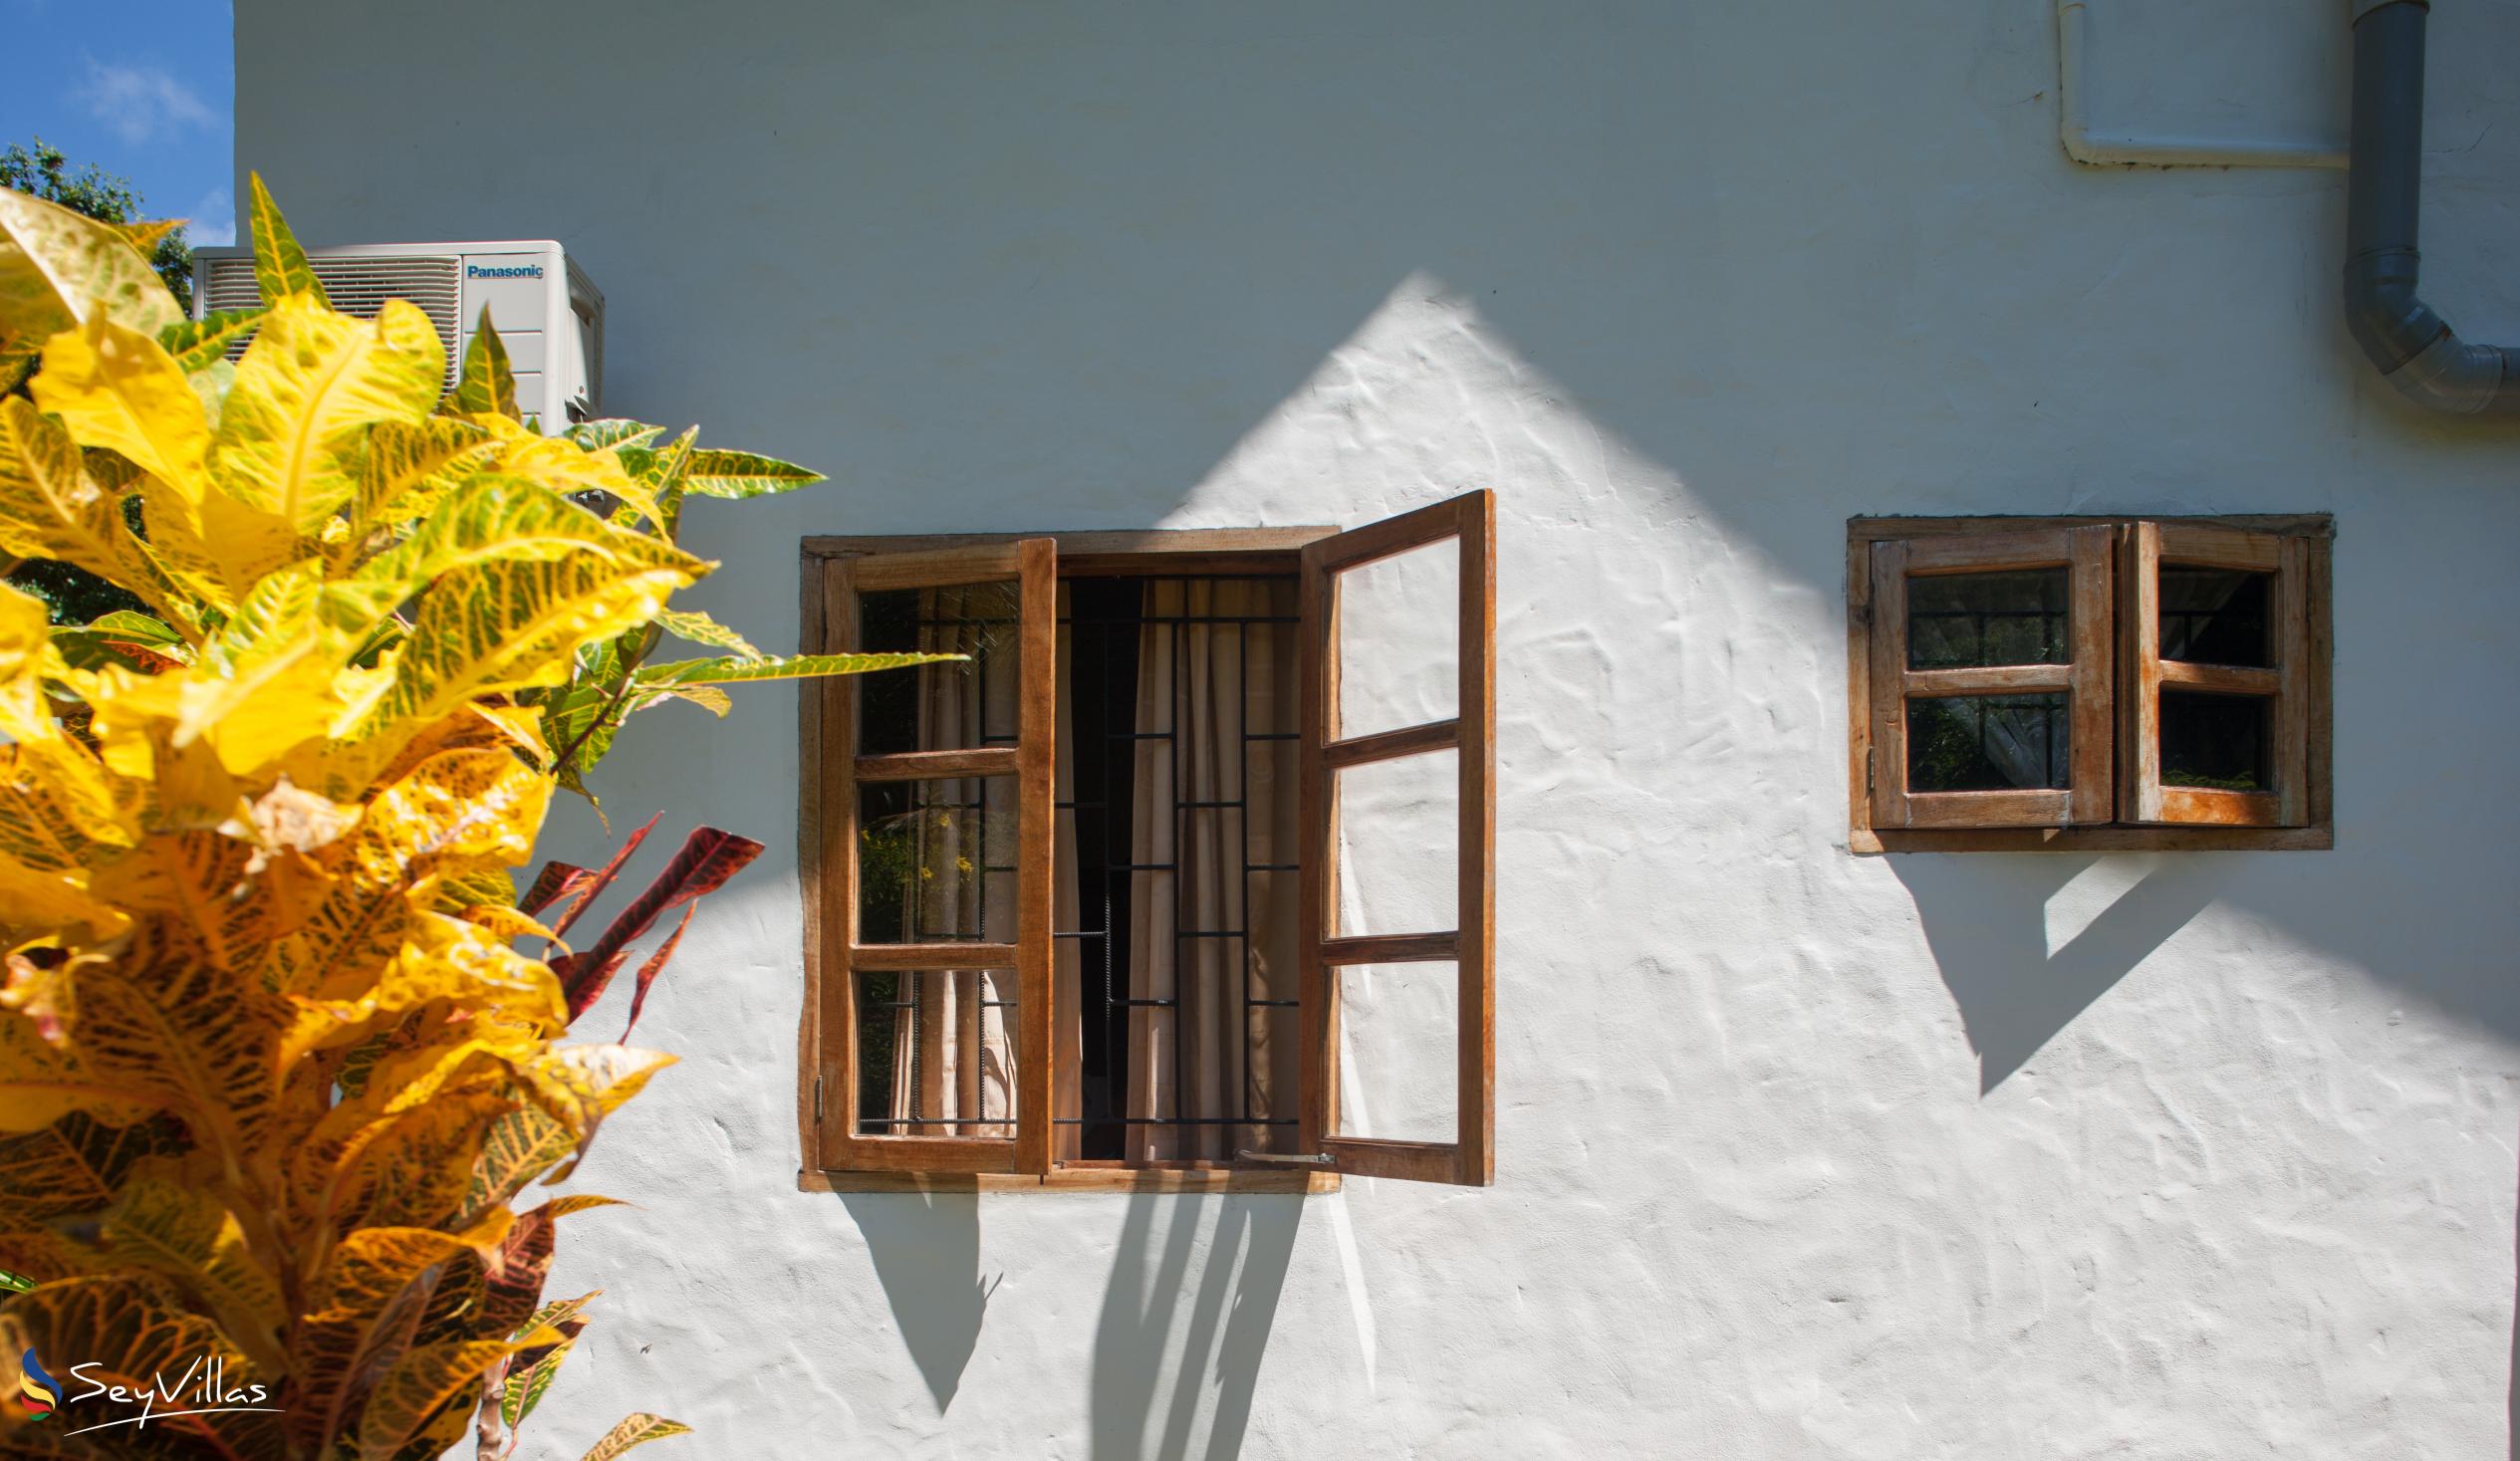 Foto 19: Tannette's Villa - Aussenbereich - La Digue (Seychellen)